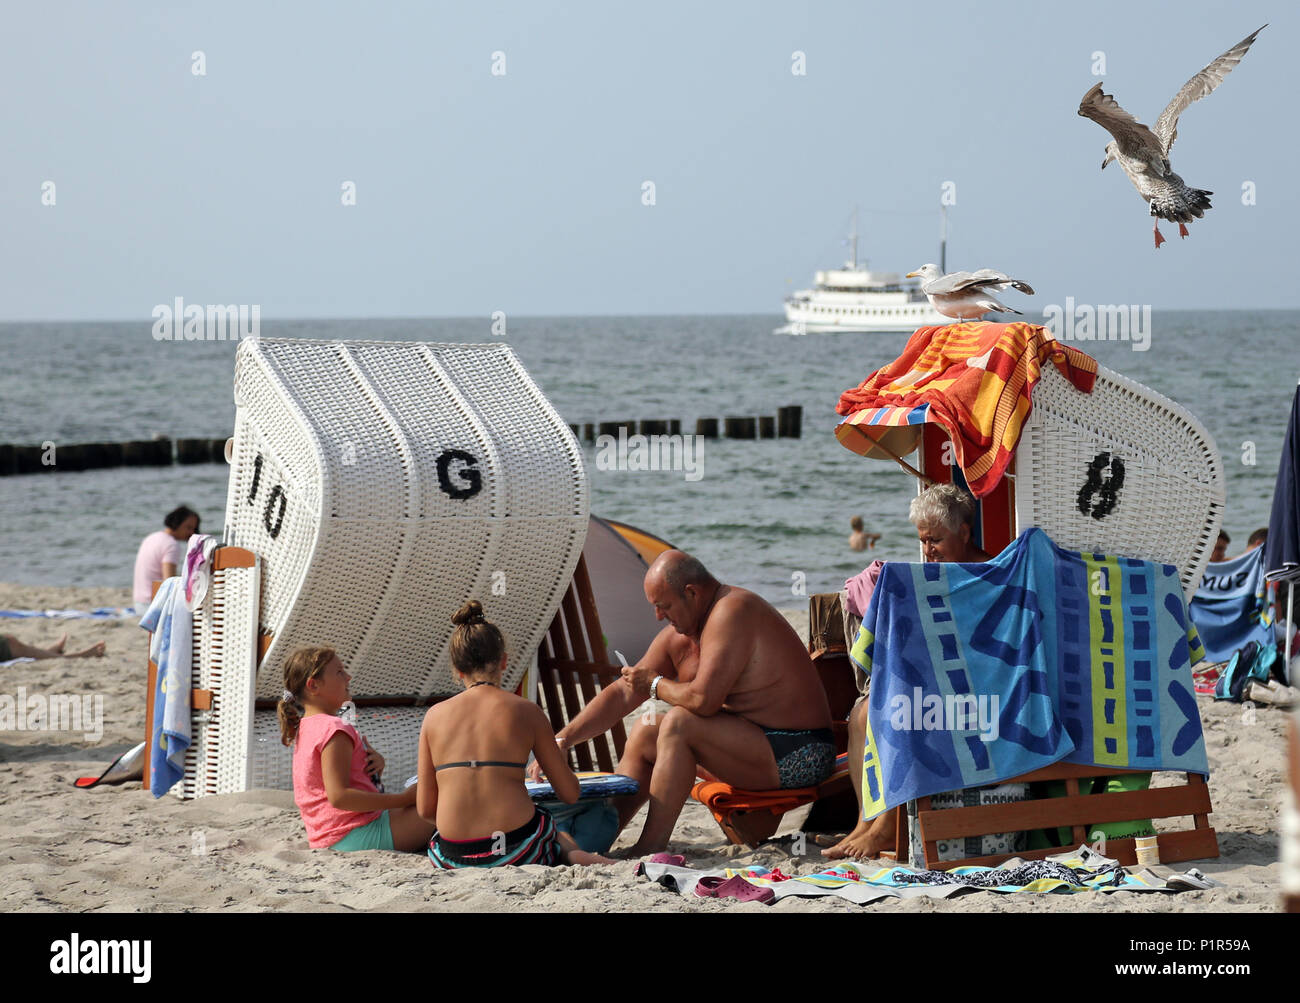 Moewe Kuehlungsborn, Alemania, acercándose a una playa artificial cesta Foto de stock